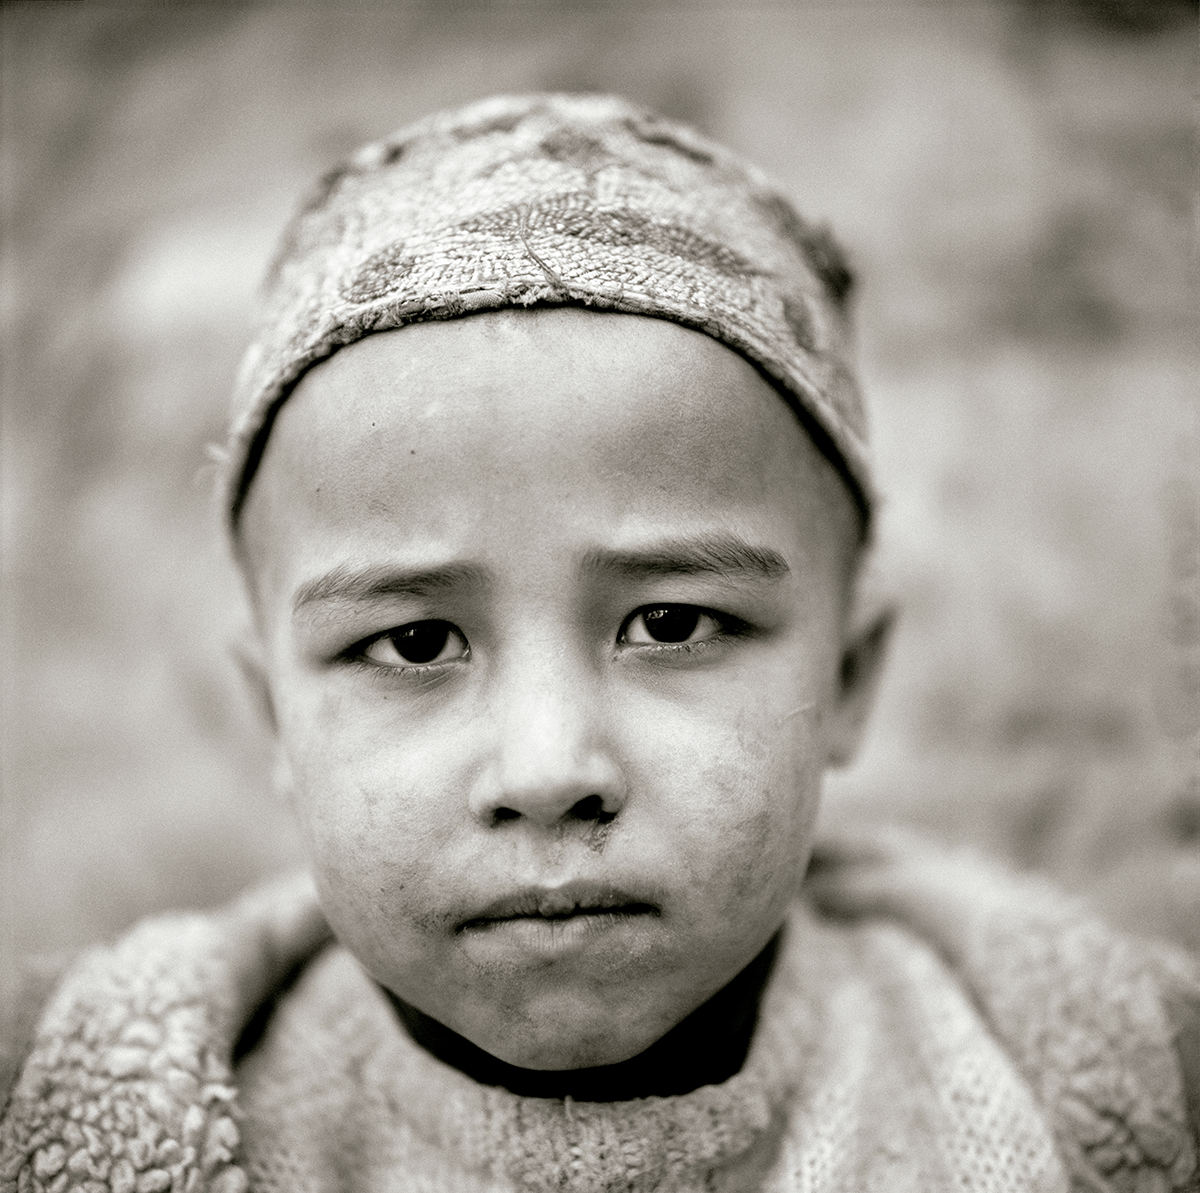 Afghan boy born in exile, north Pakistan © Fazal Sheikh 2009 © COLECCIONES Fundación MAPFRE